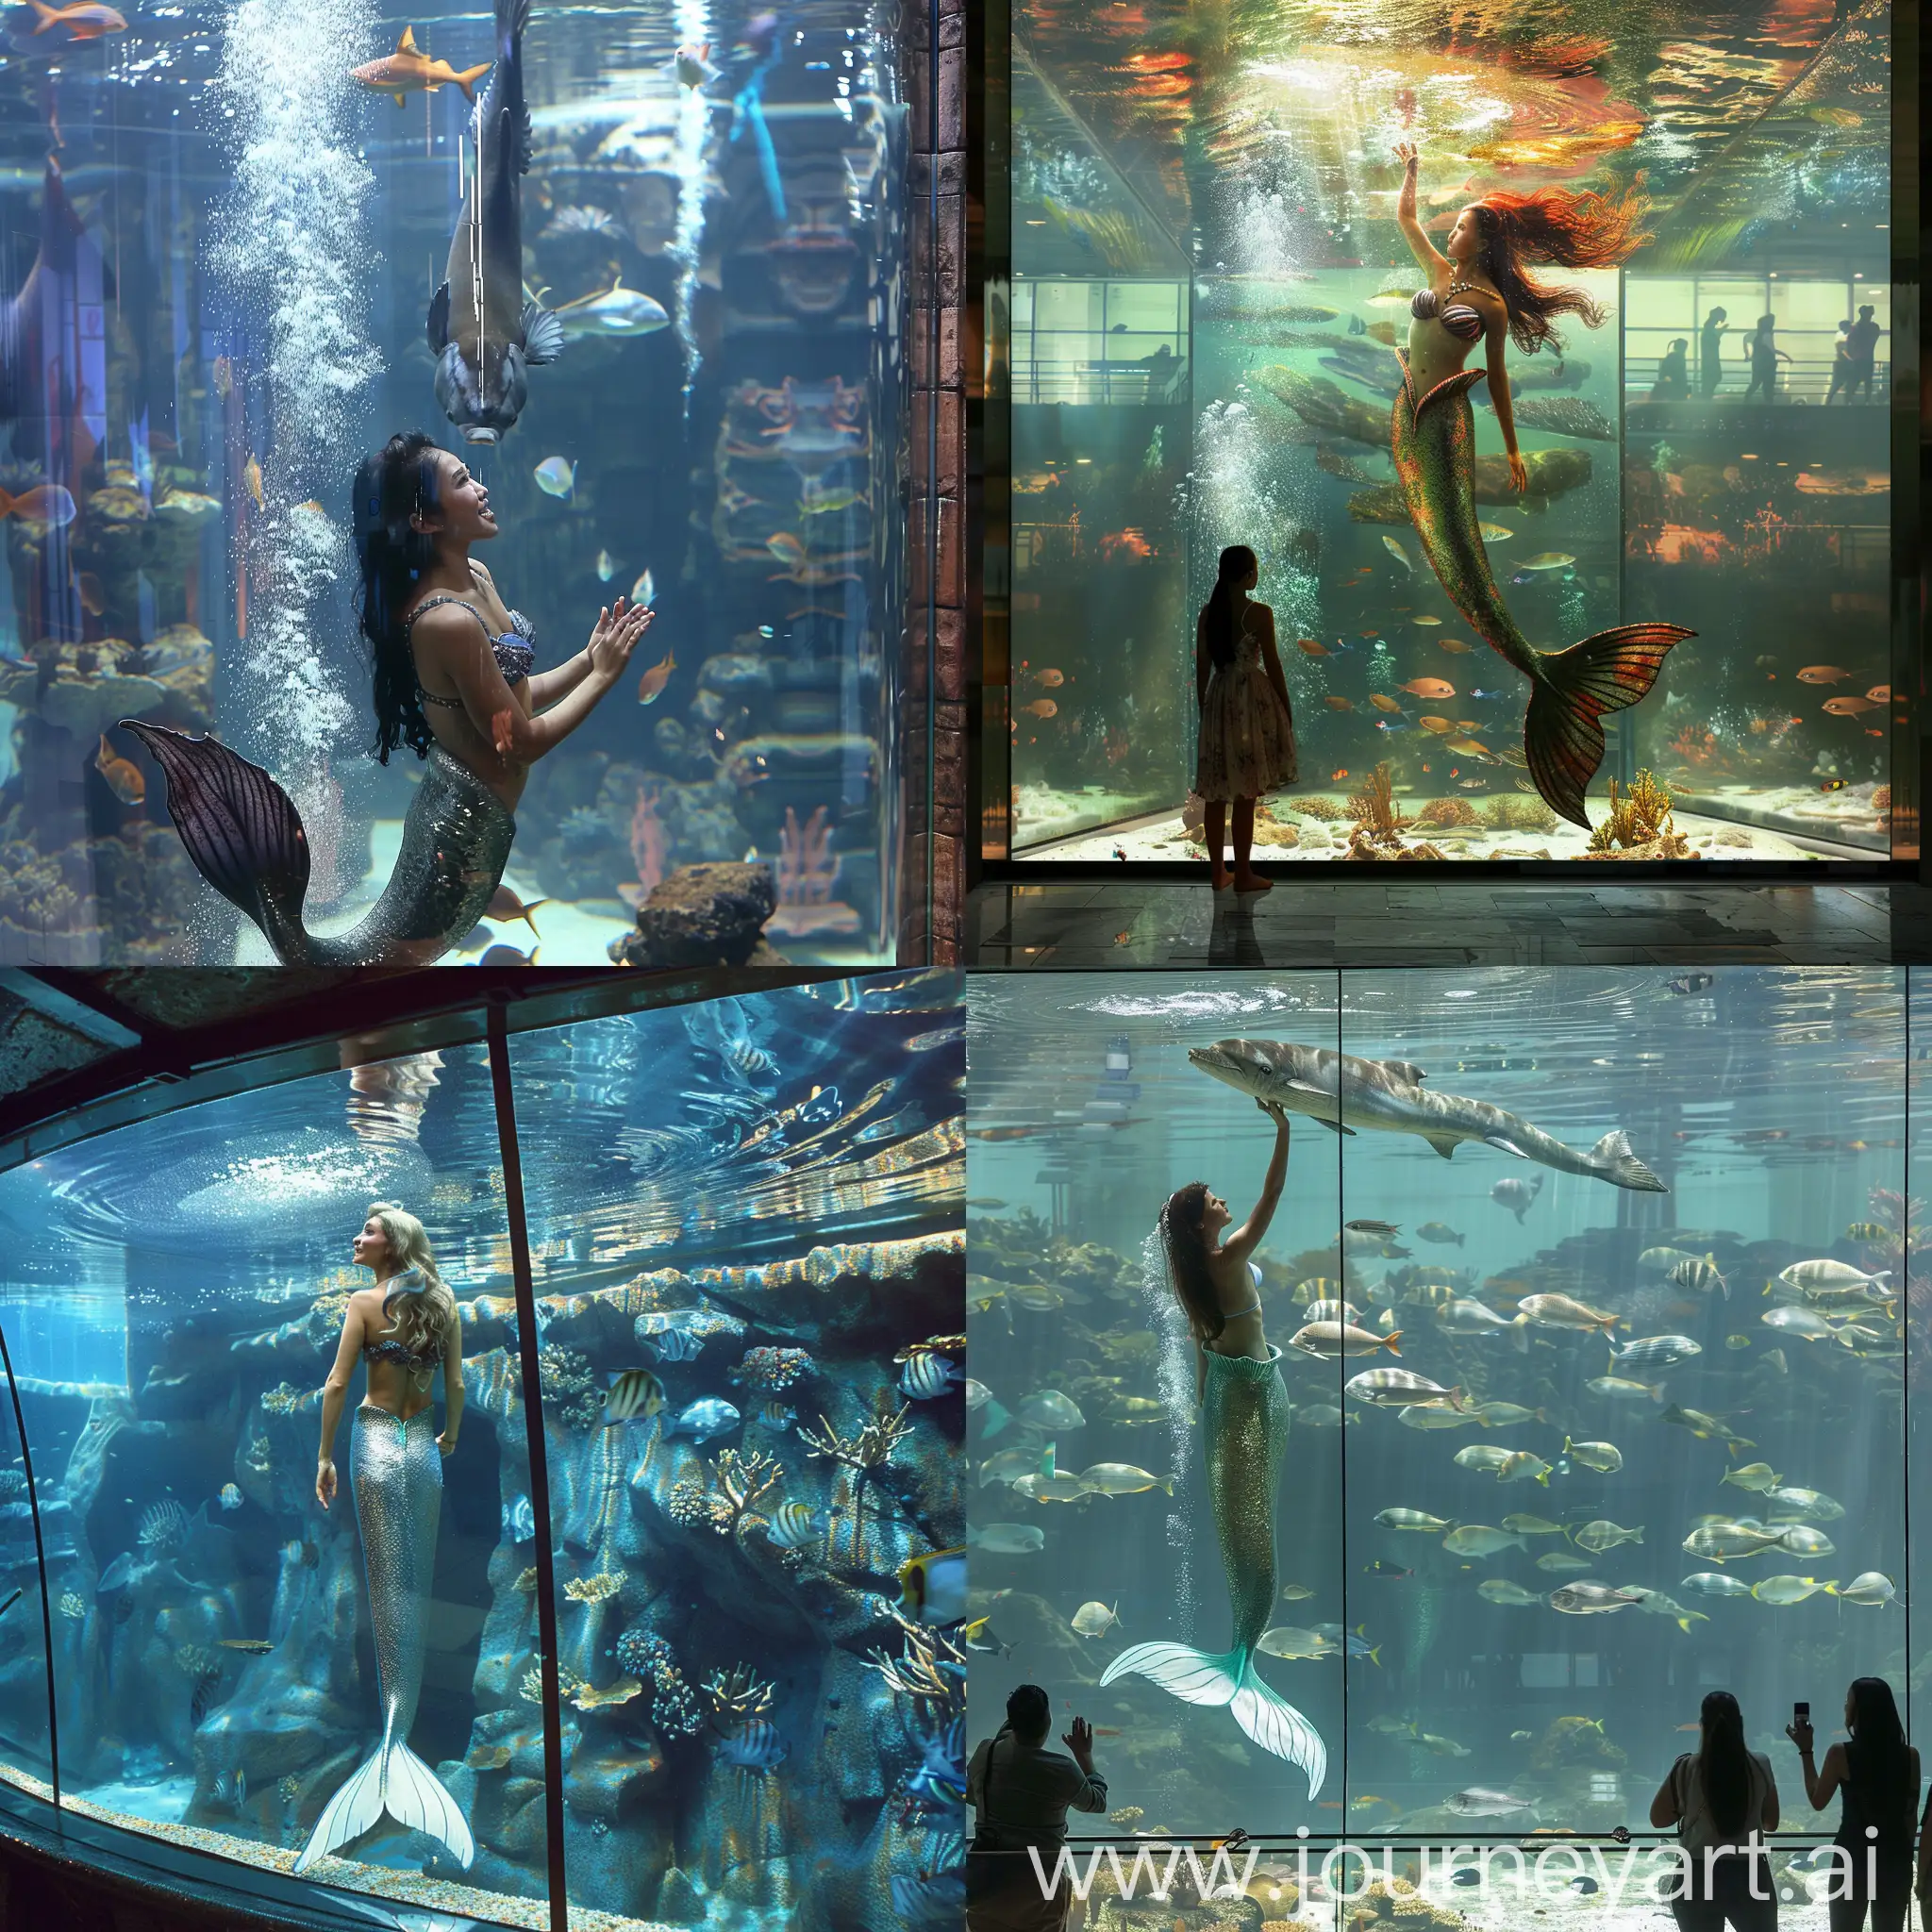 Mermaid-Seeking-Assistance-in-a-Spacious-Aquarium